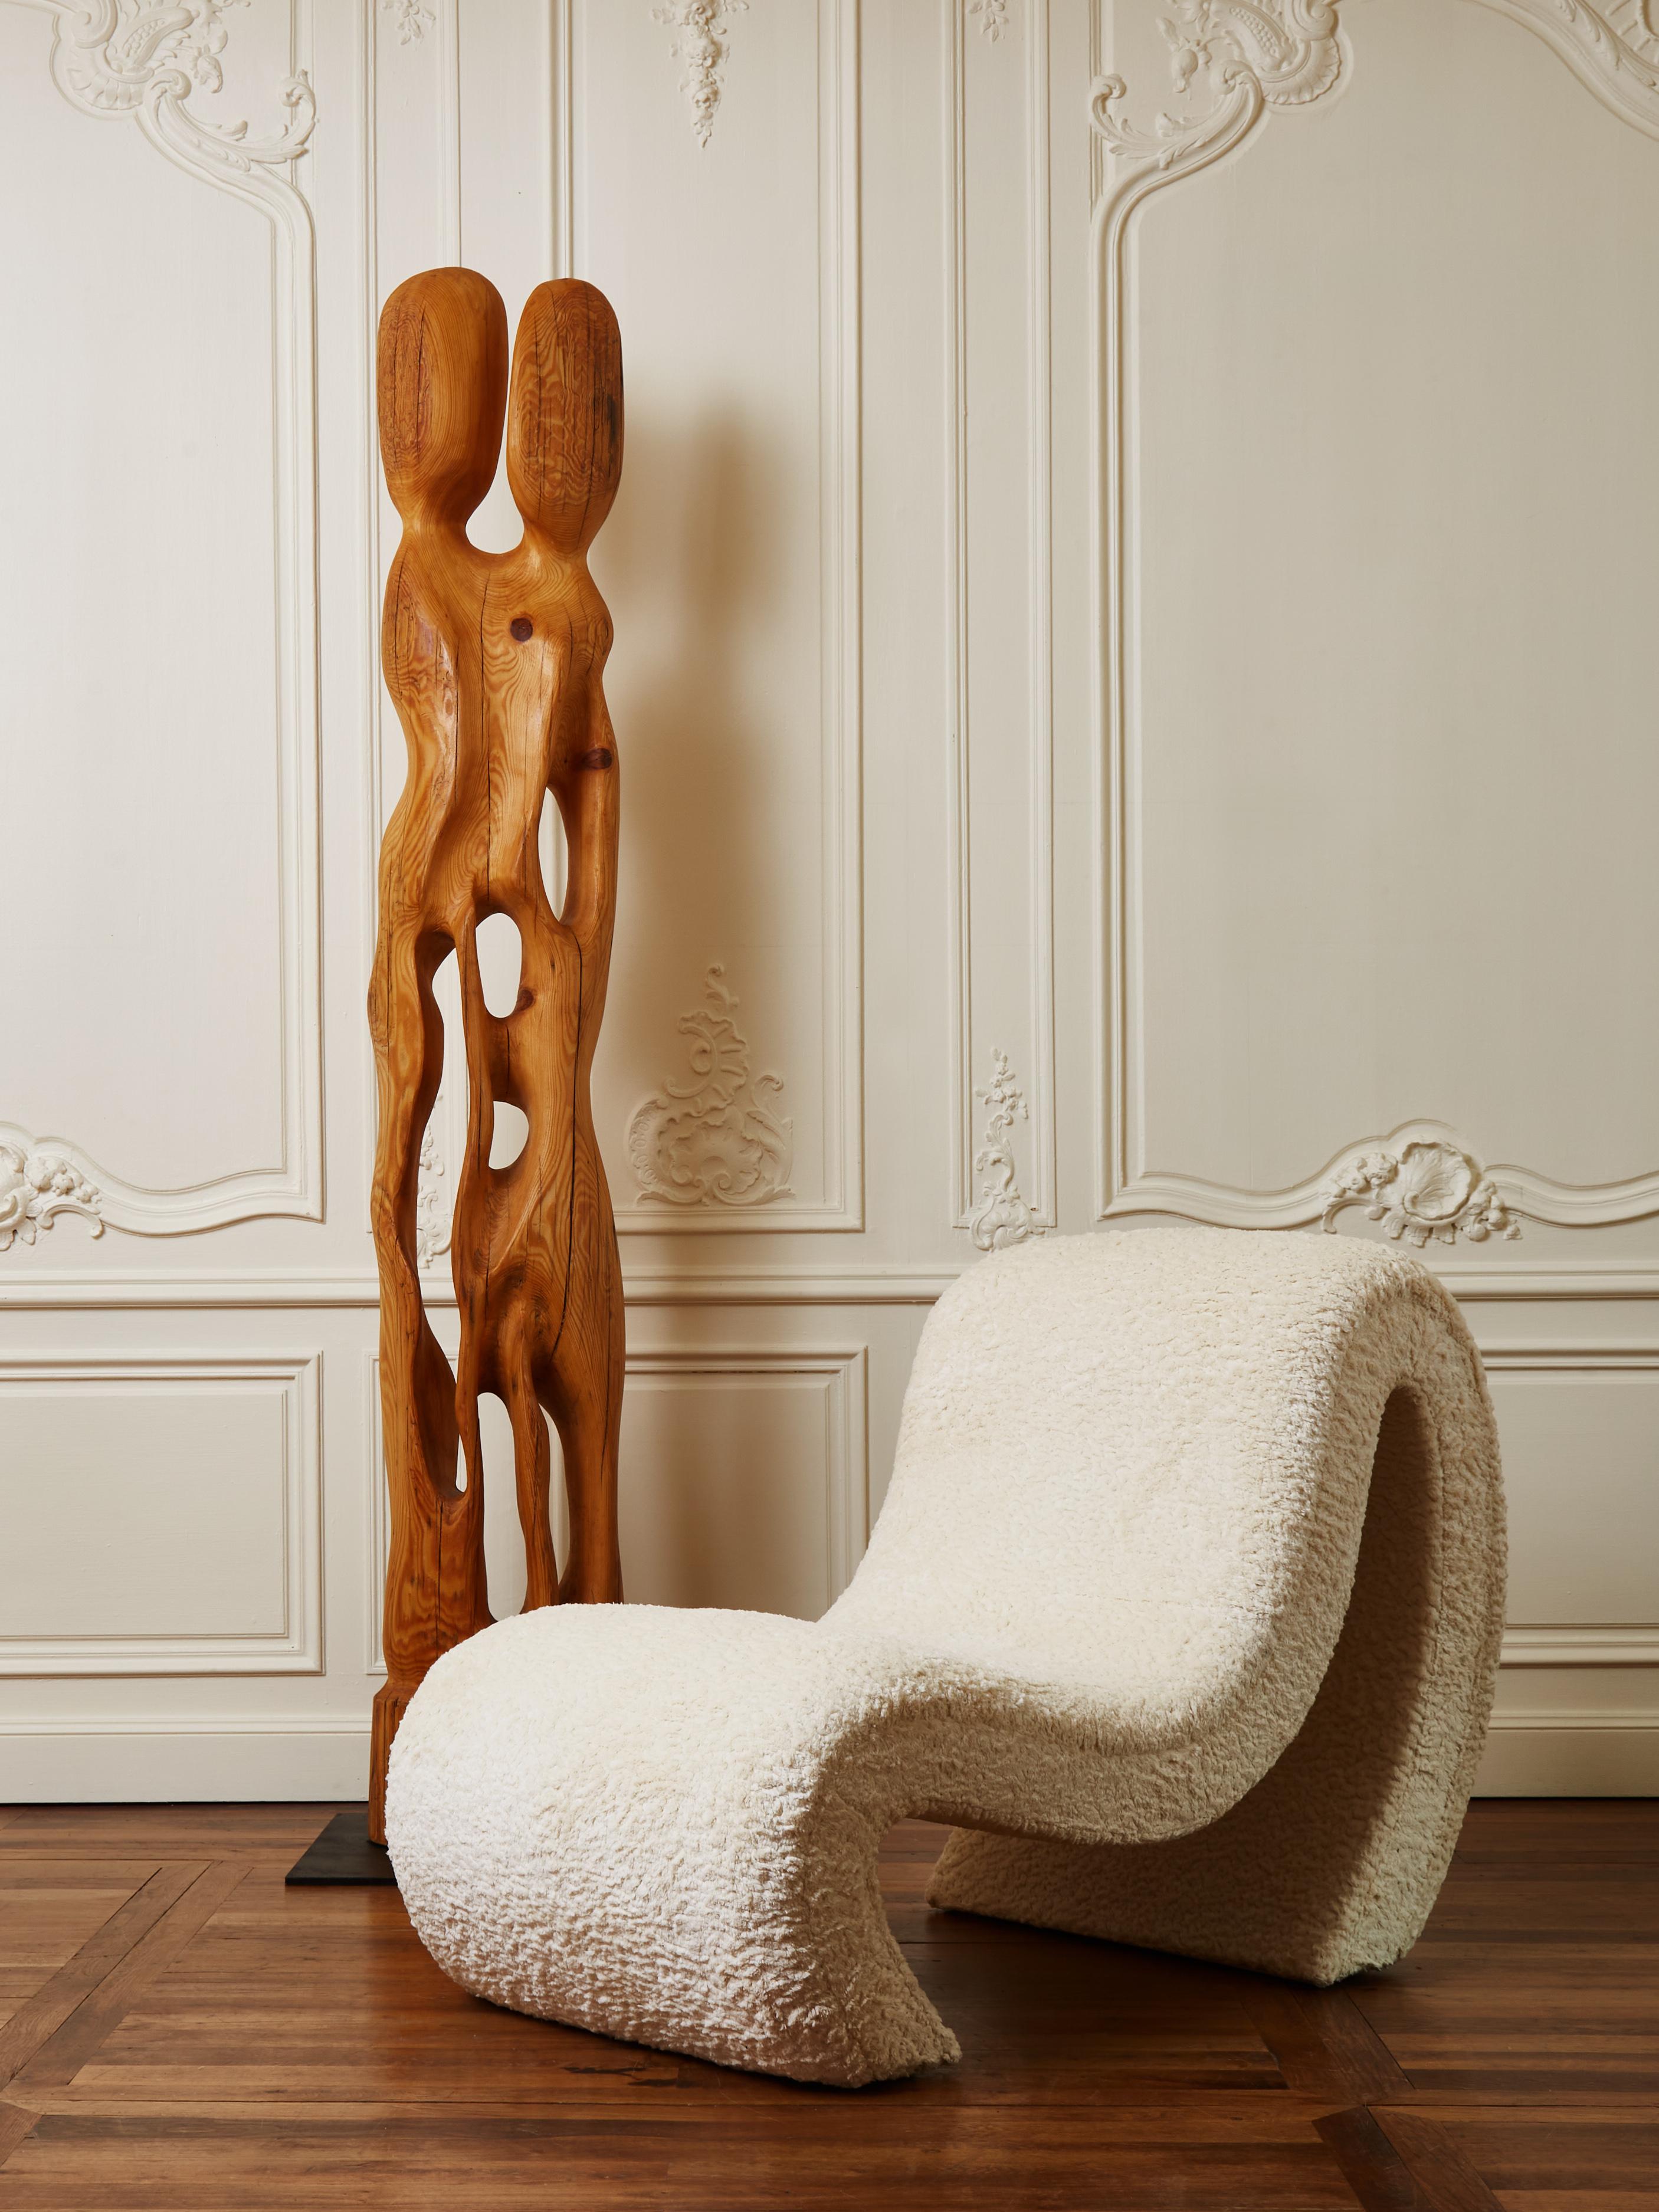 Elegantes Paar Loungesessel, bezogen mit einem Stoff von Loro Piana.
Gestaltung durch das Studio Glustin.
Frankreich, 2022.